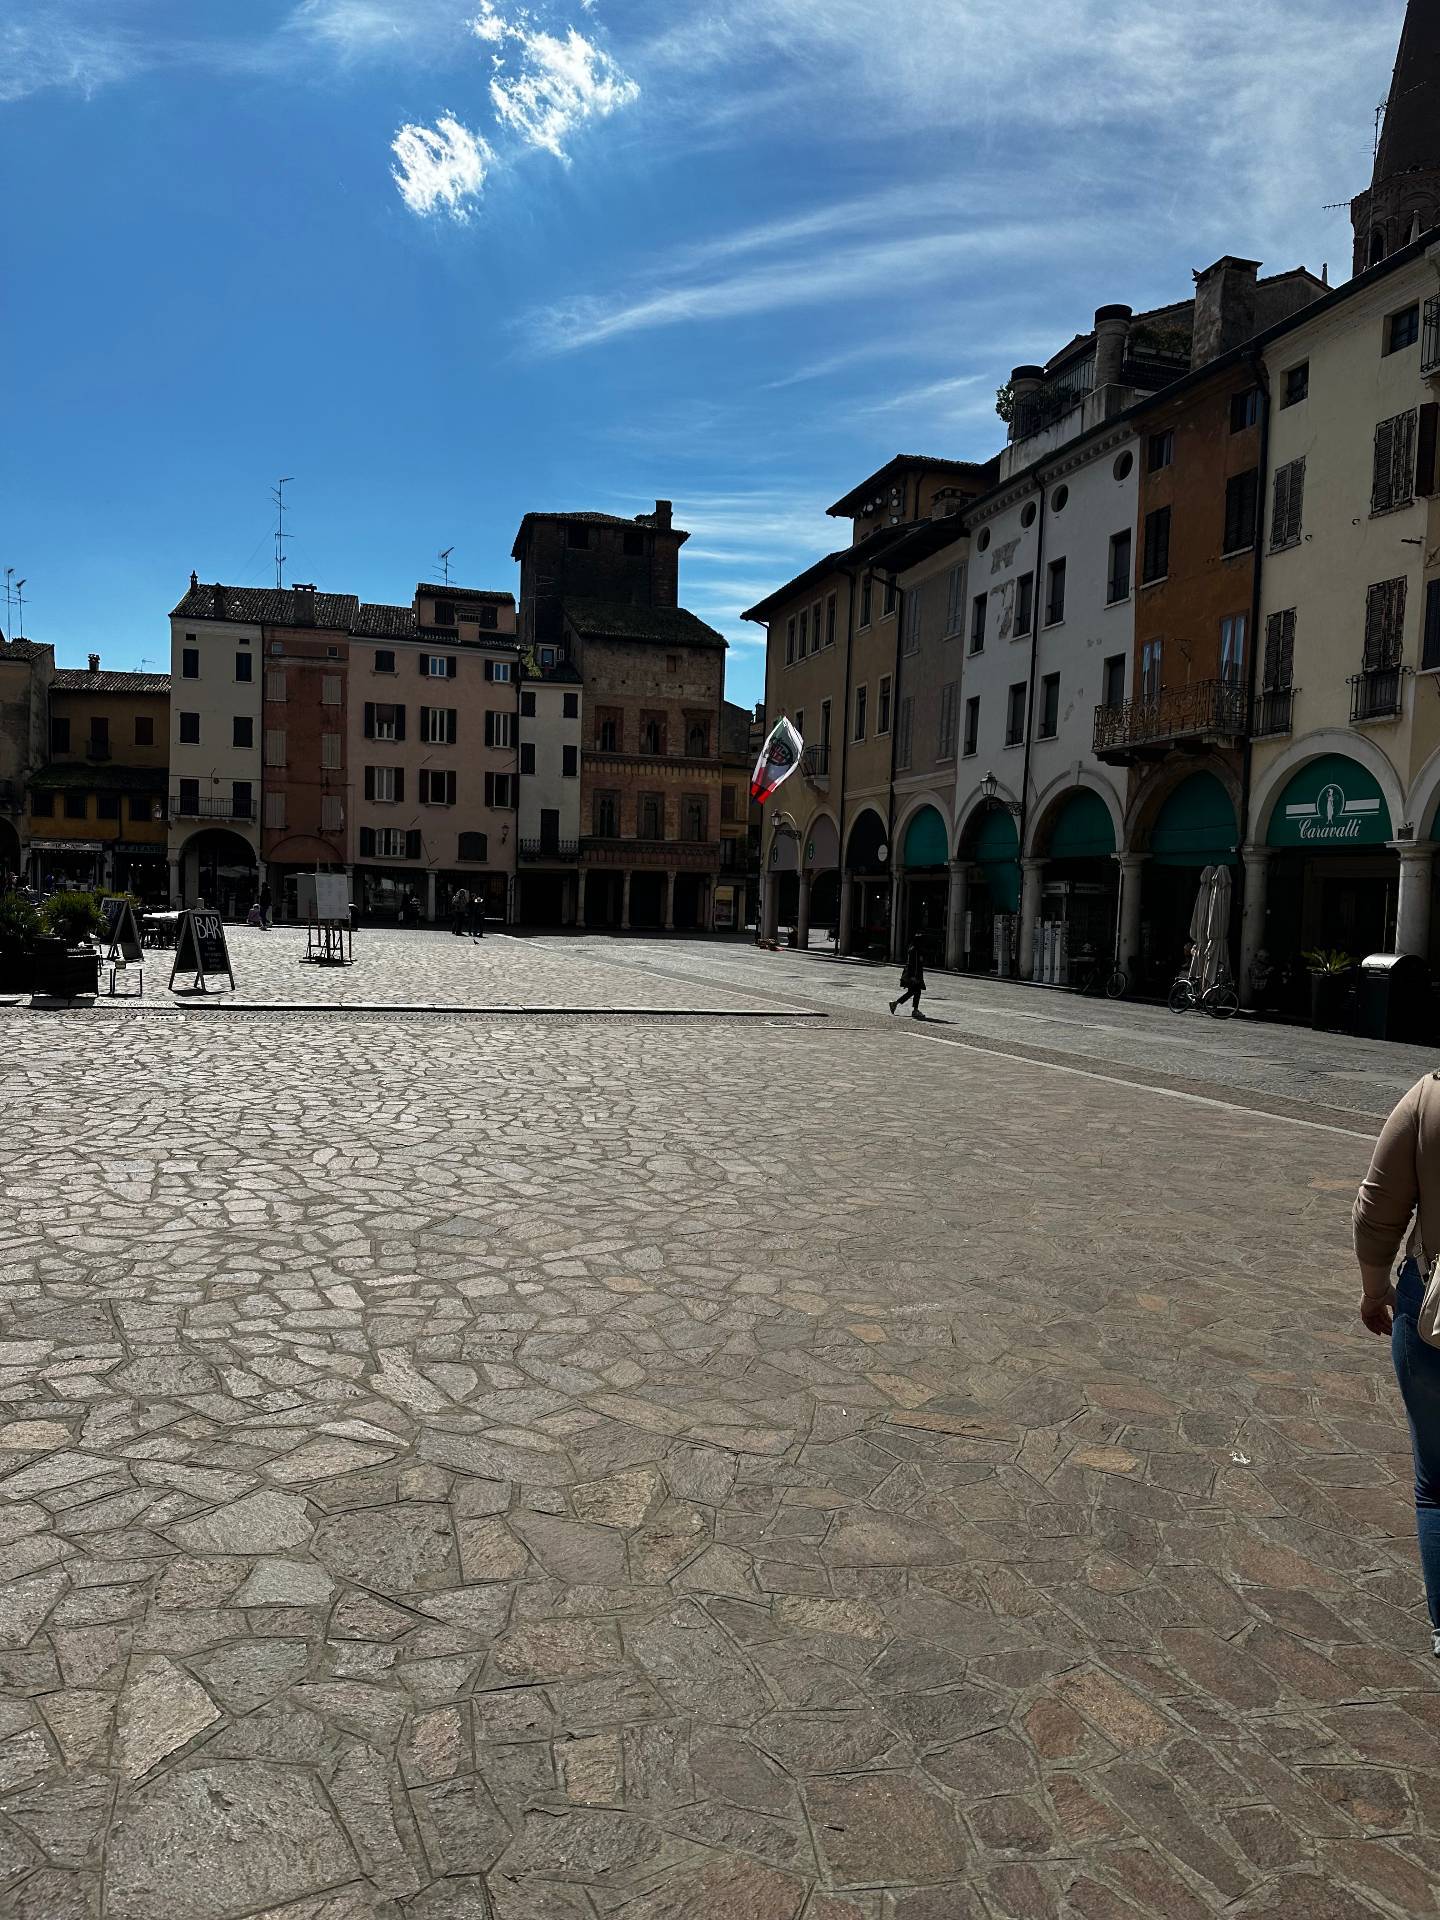 Locale commerciale in affitto, Mantova centro storico